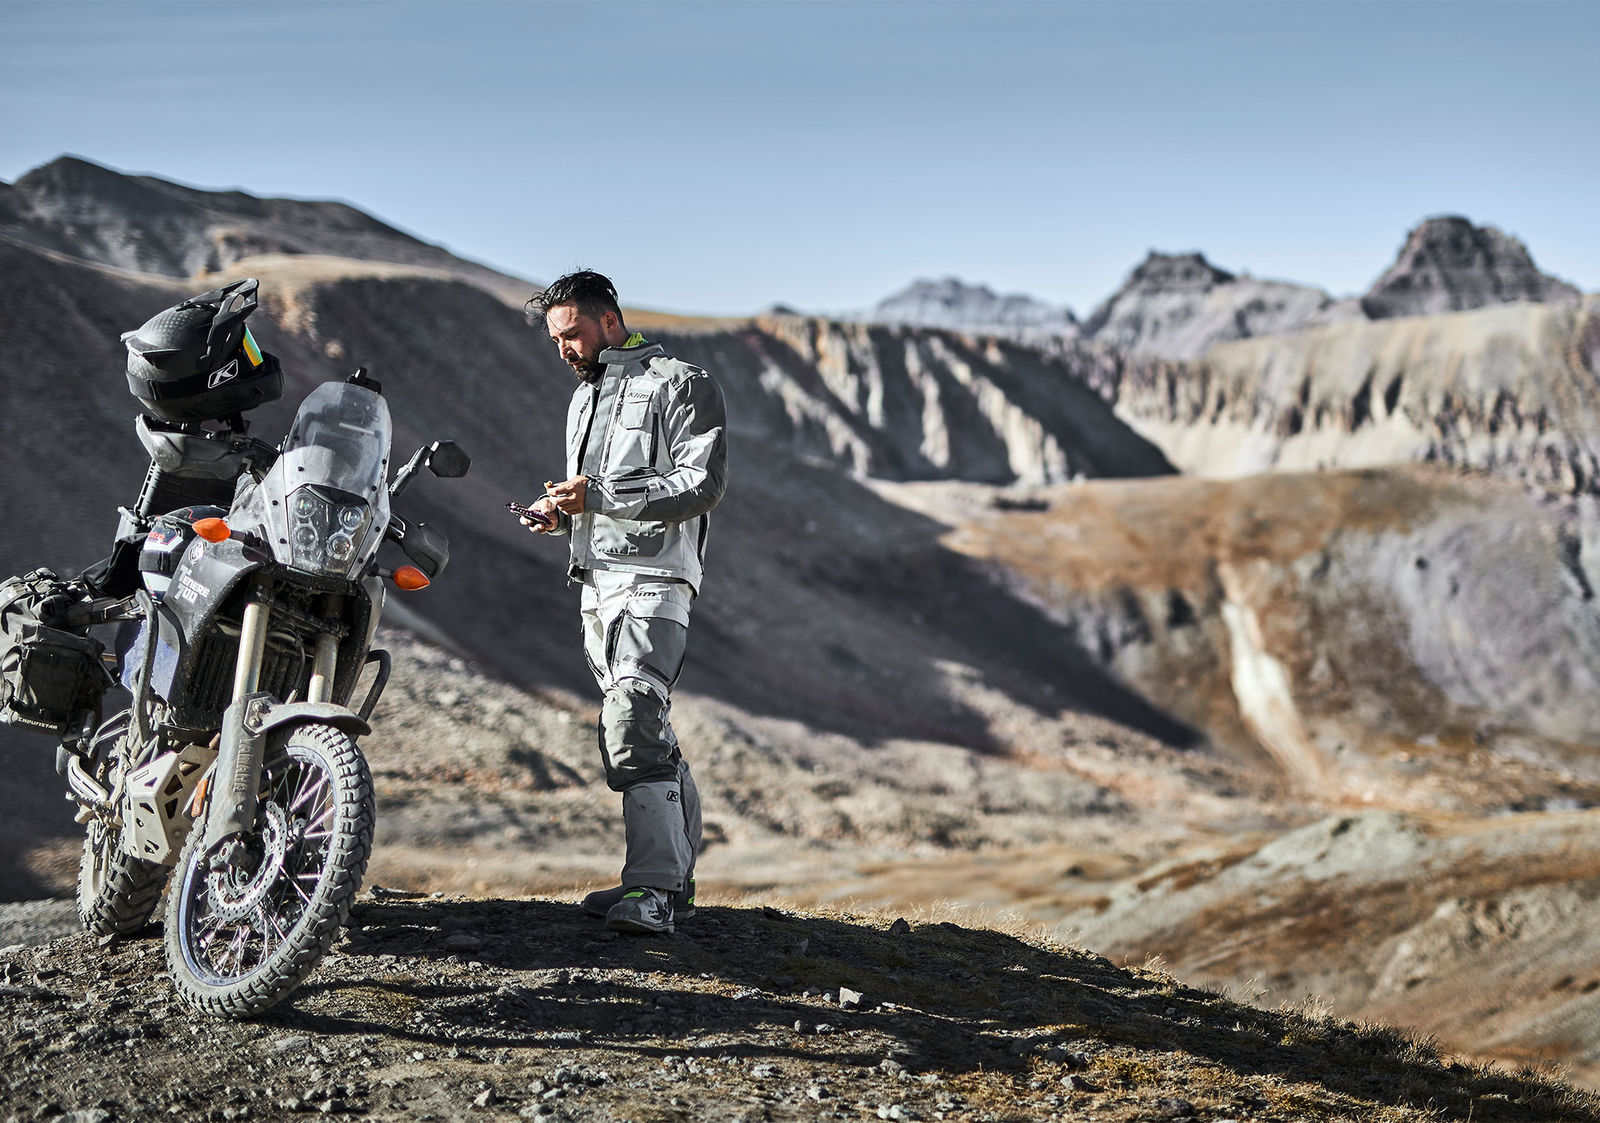 KLIM Motorradbekleidung - Fokussiert auf das Wesentliche !